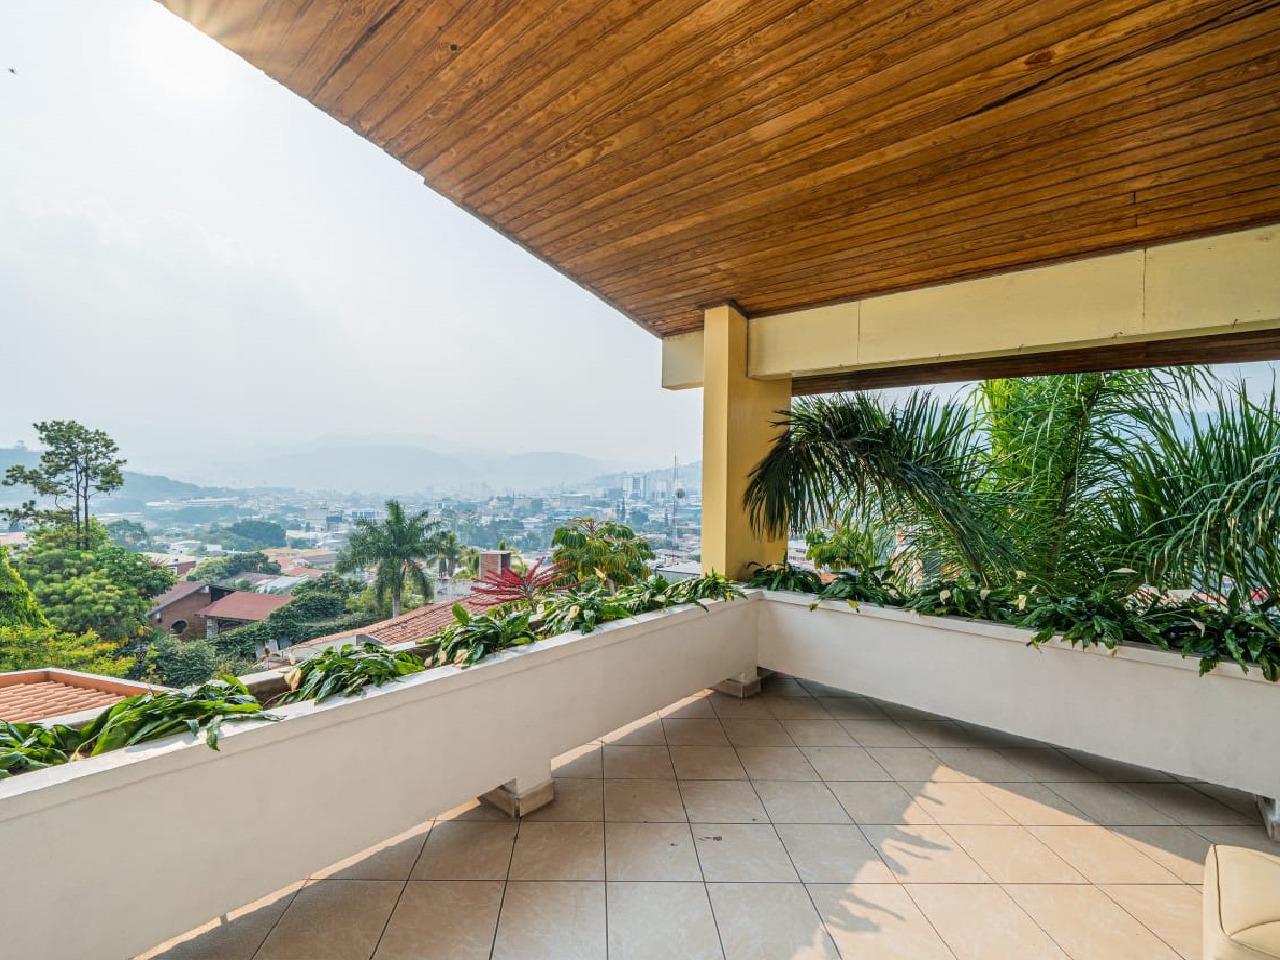 Esta casa cuenta con terraza donde ofrece una excelente vista a la capital decorado con plantas para añadir color.